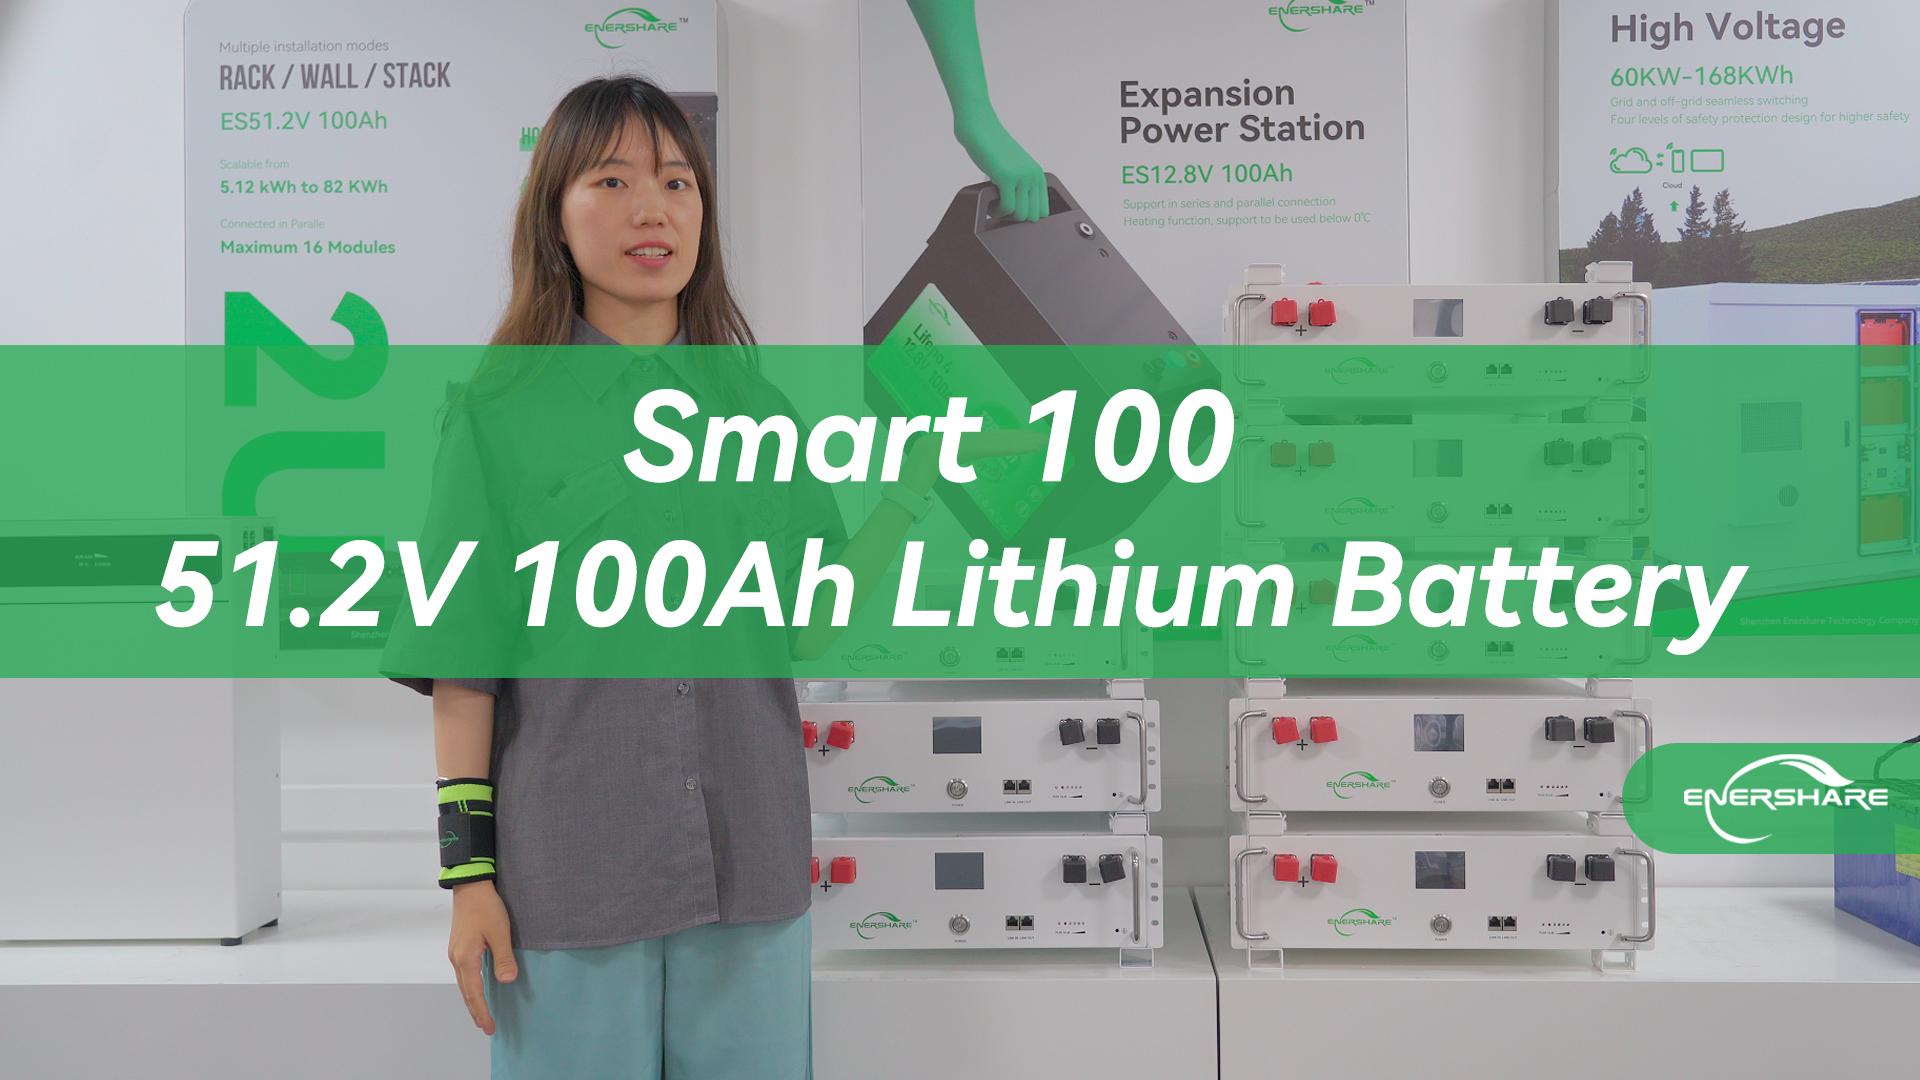 Rack-Mount Battery——Smart 100 51.2V 100Ah Battery